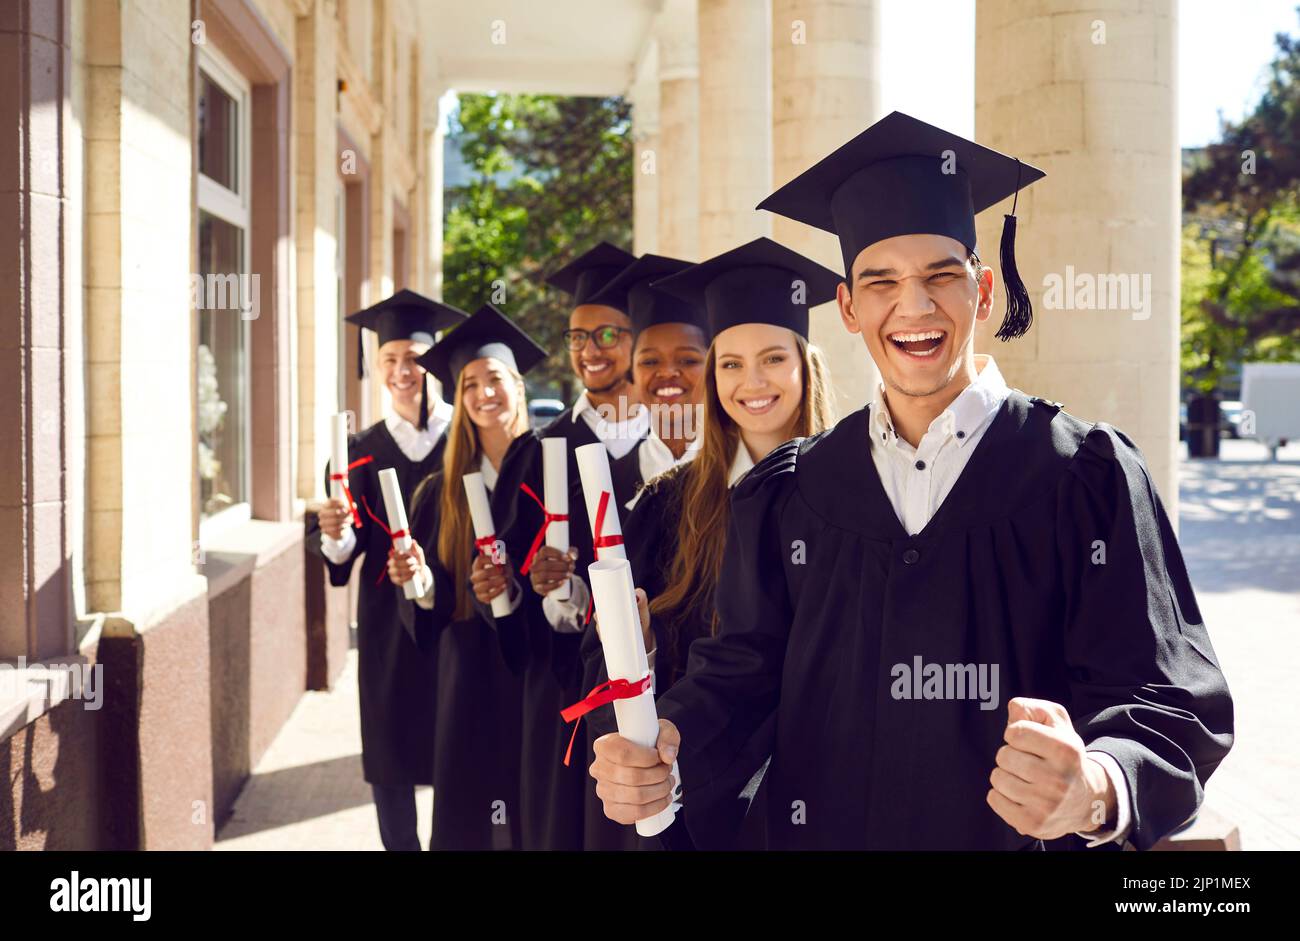 Les heureux diplômés enthousiastes de l'université se réjouissent de la réussite de leurs études. Banque D'Images